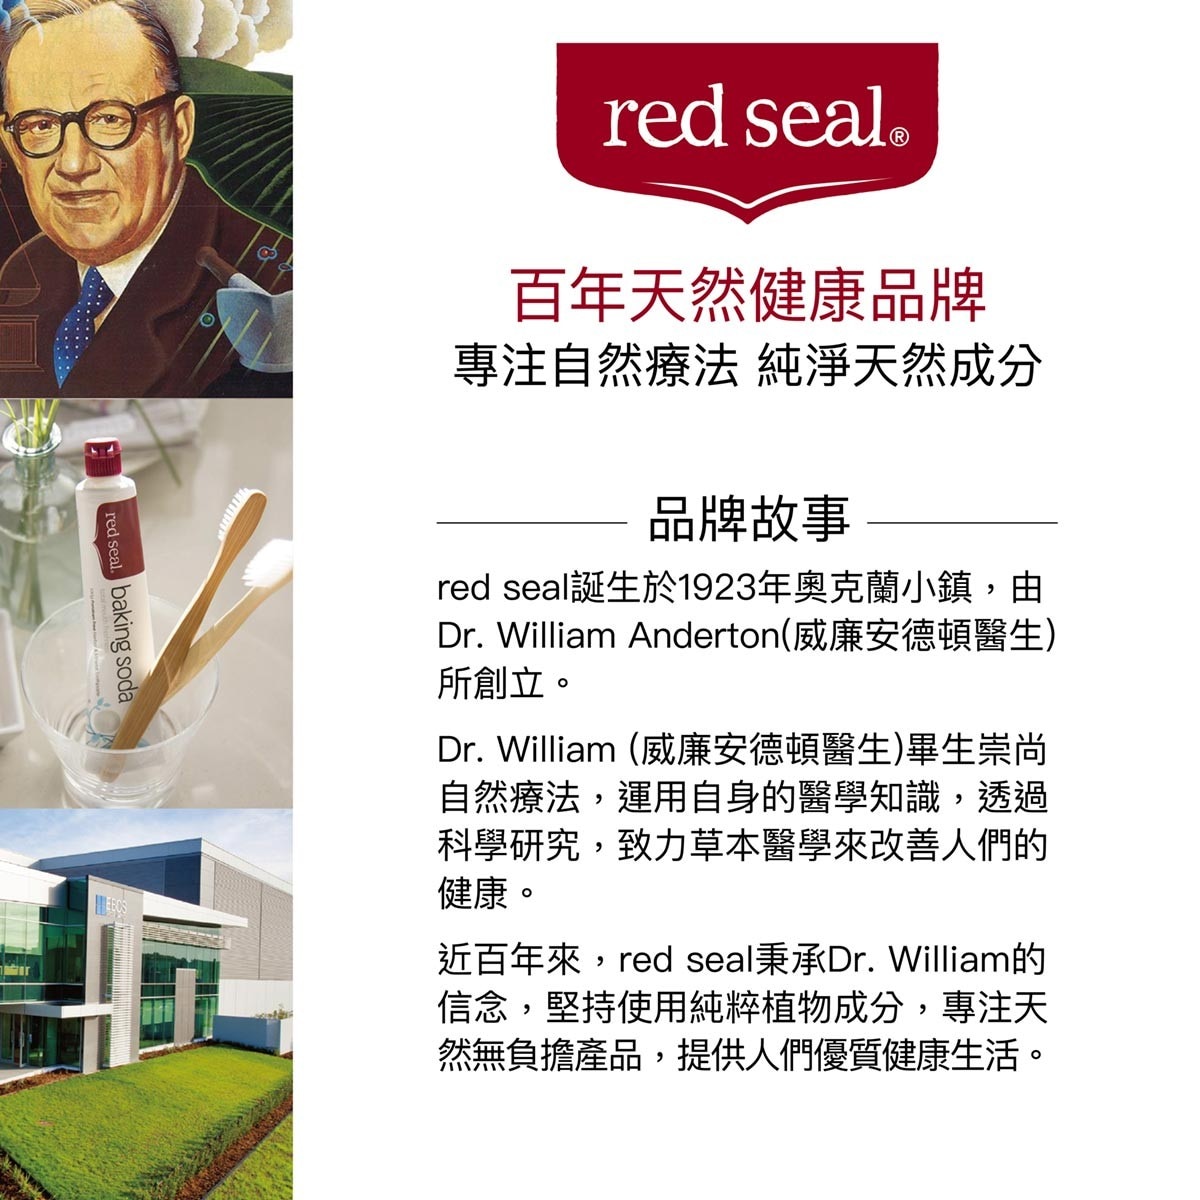 Red Seal 紅印清新草本牙膏以自然和清新的方式來清潔牙齒，多種植物草本修護精華，維持清新好口氣。